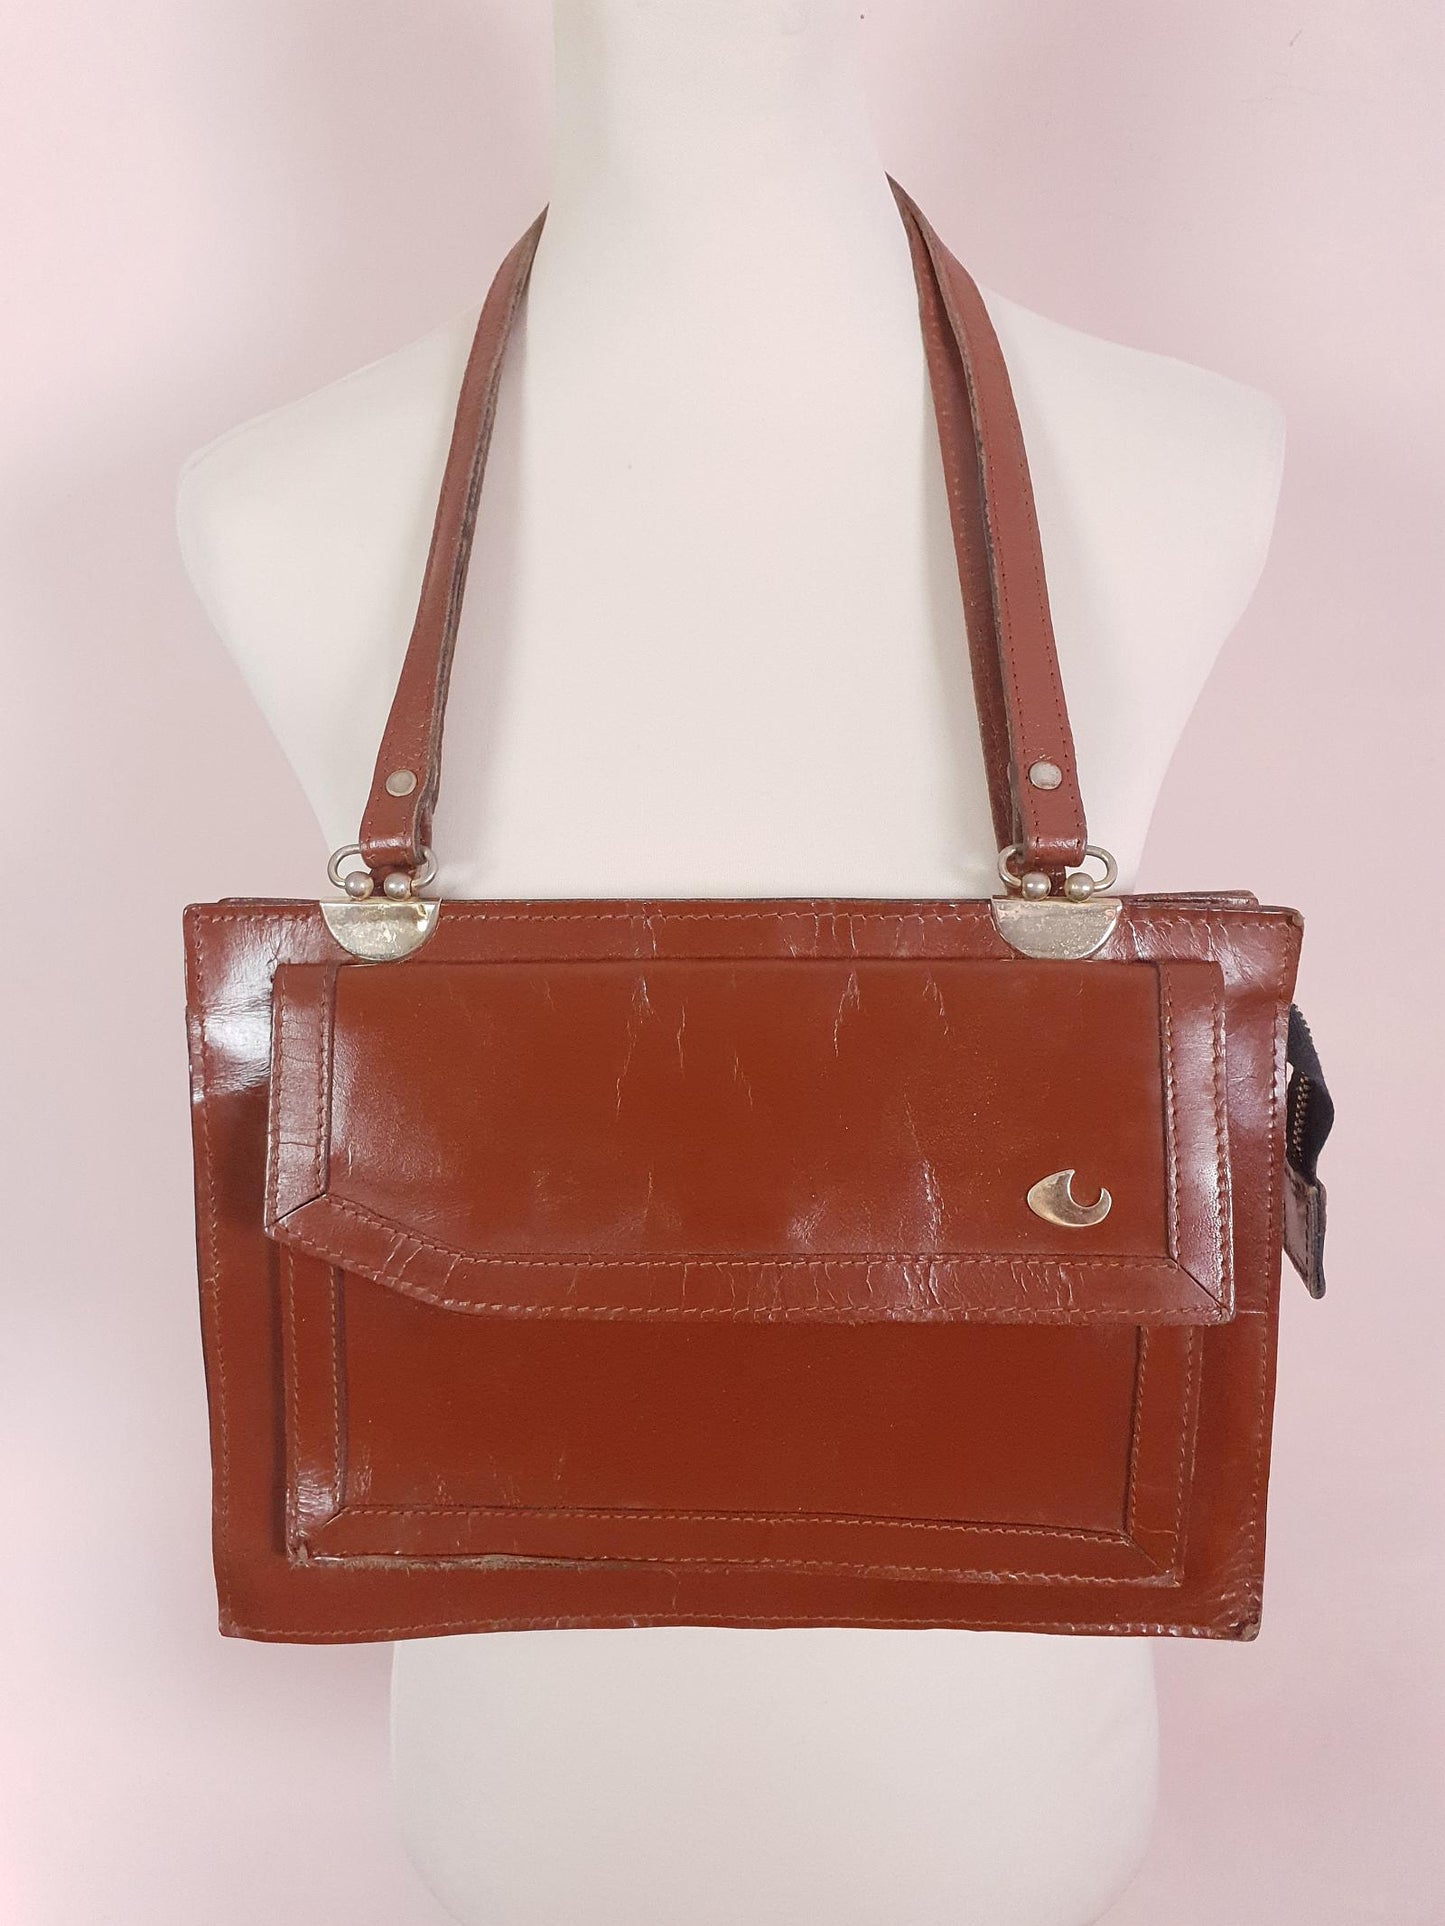 Vintage 1970s Brown Leather Shoulder Bag Handbag